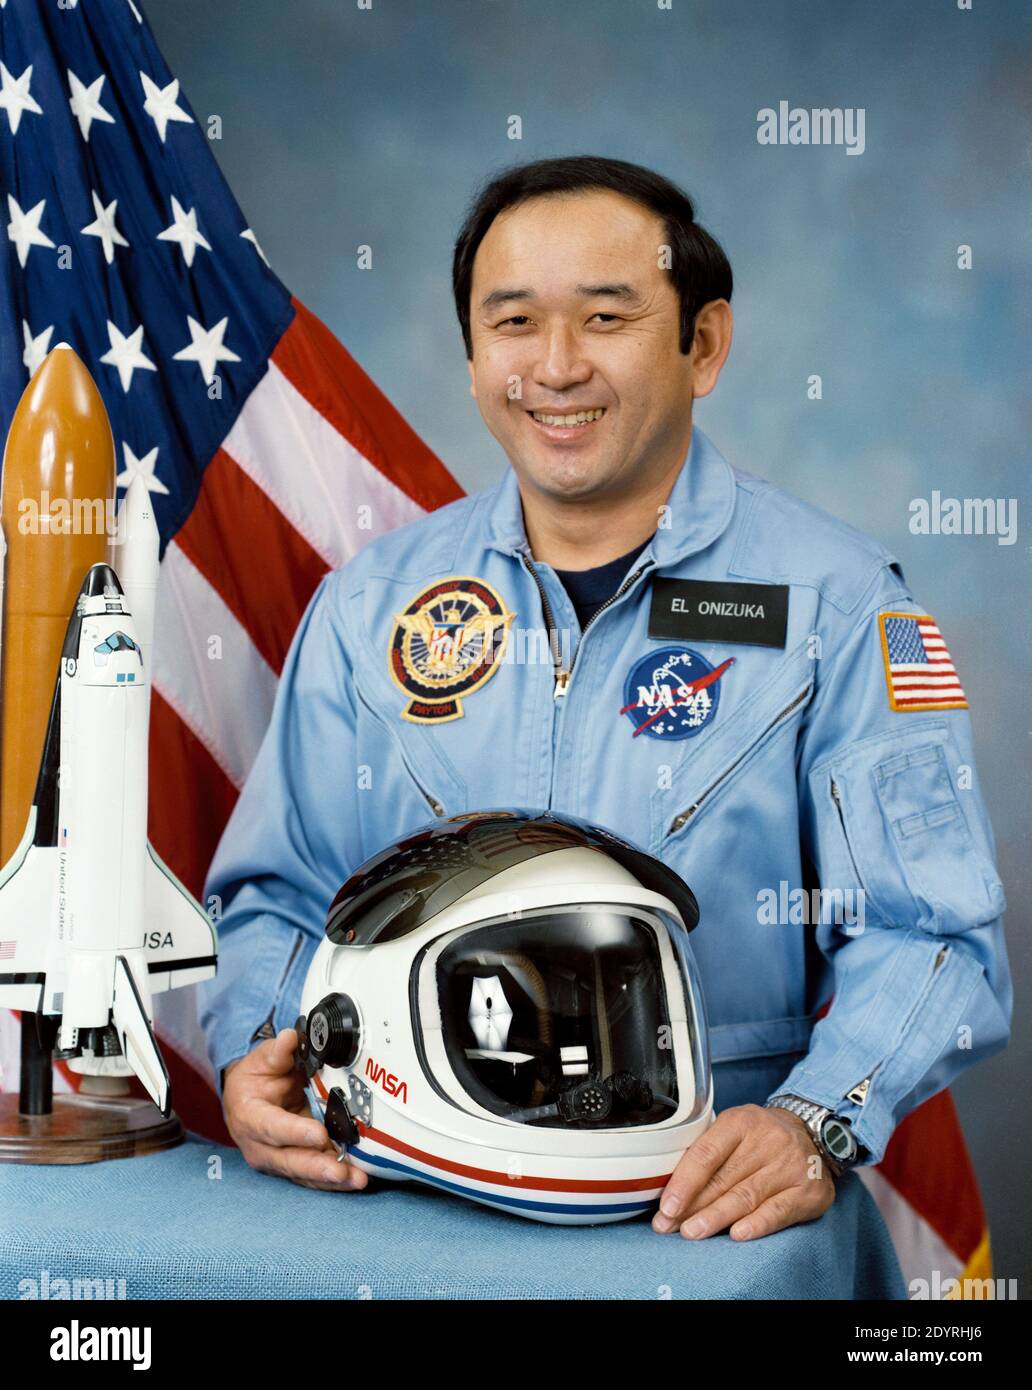 Ellison Shoji Onizuka (24 juin 1946 – 28 janvier 1986) astronaute et ingénieur américain de Kealakekua, Hawaii, qui a réussi à voler dans l'espace avec la navette spatiale Discovery sur STS-51-C. Il est mort lors de la destruction de la navette spatiale Challenger, sur laquelle il a été spécialiste de mission pour la mission STS-51-L. Il a été le premier américain asiatique et la première personne d'ascendance japonaise à atteindre l'espace. Banque D'Images